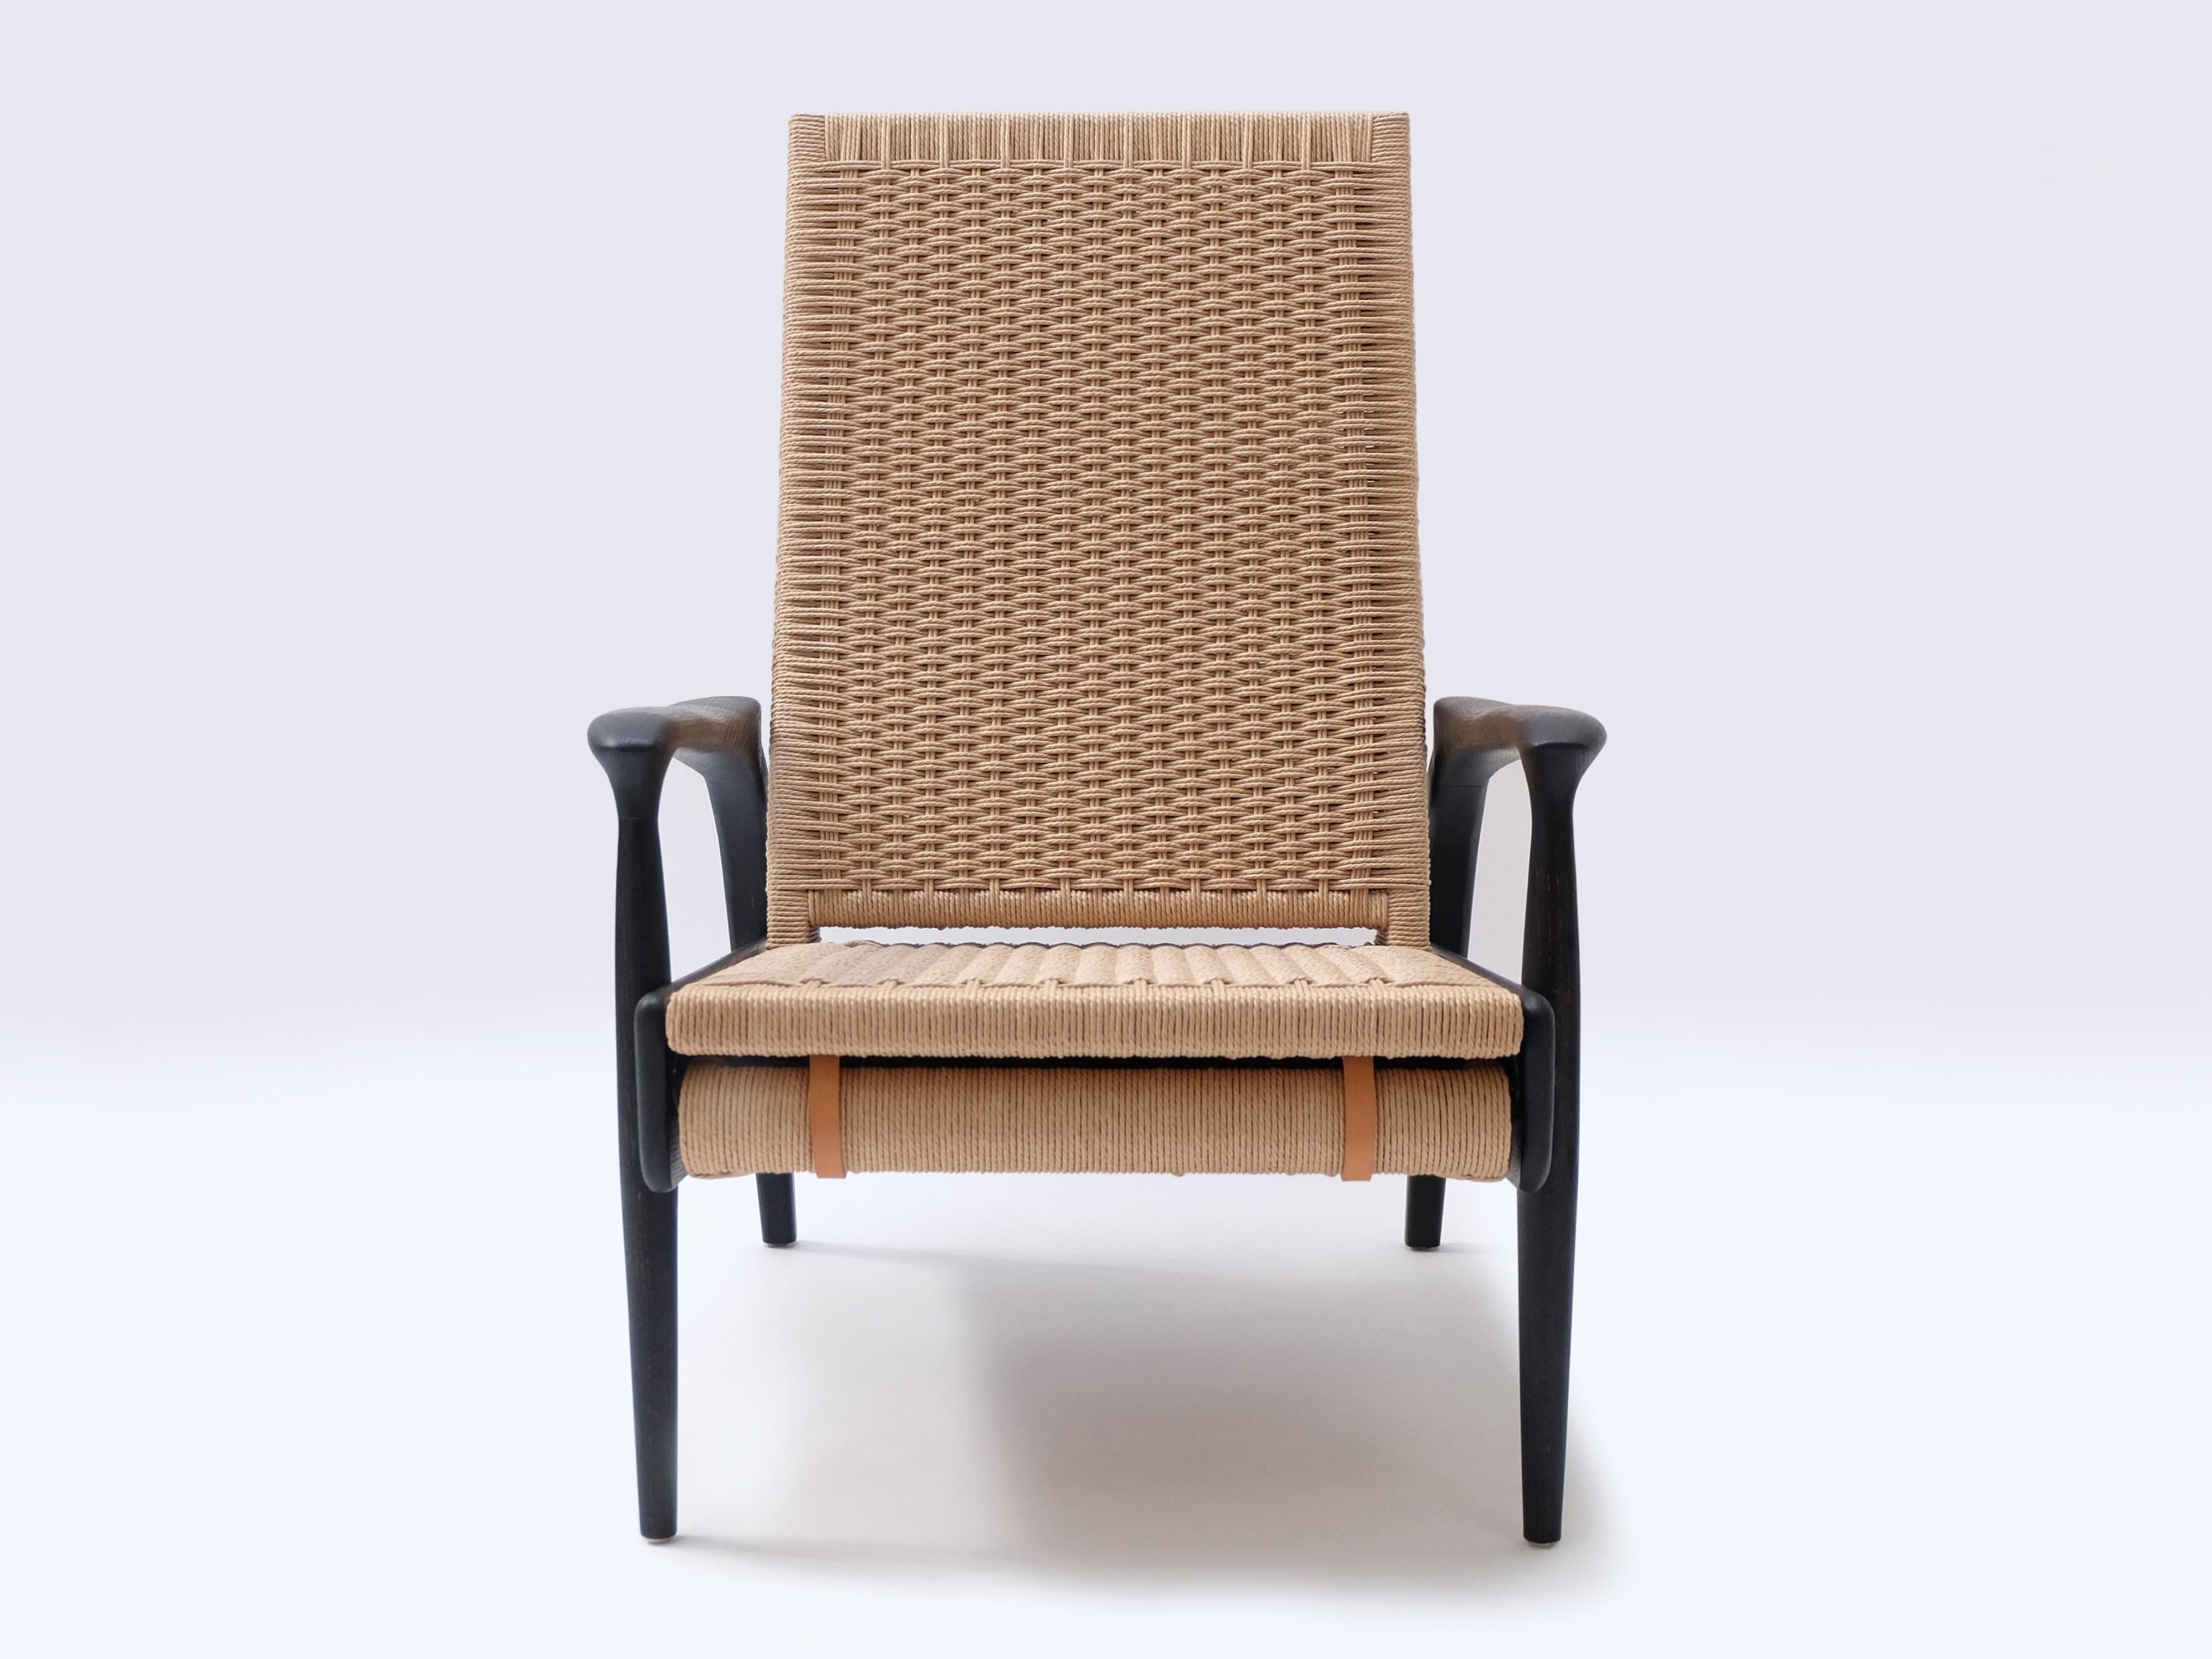 Paire de chaises longues écologiques inclinables FENDRIK fabriquées à la main et sur mesure par Studio180degree
Représenté en chêne noirci naturel massif et durable et en corde danoise naturelle contrastante.

Noble - Tactile - Raffiné -